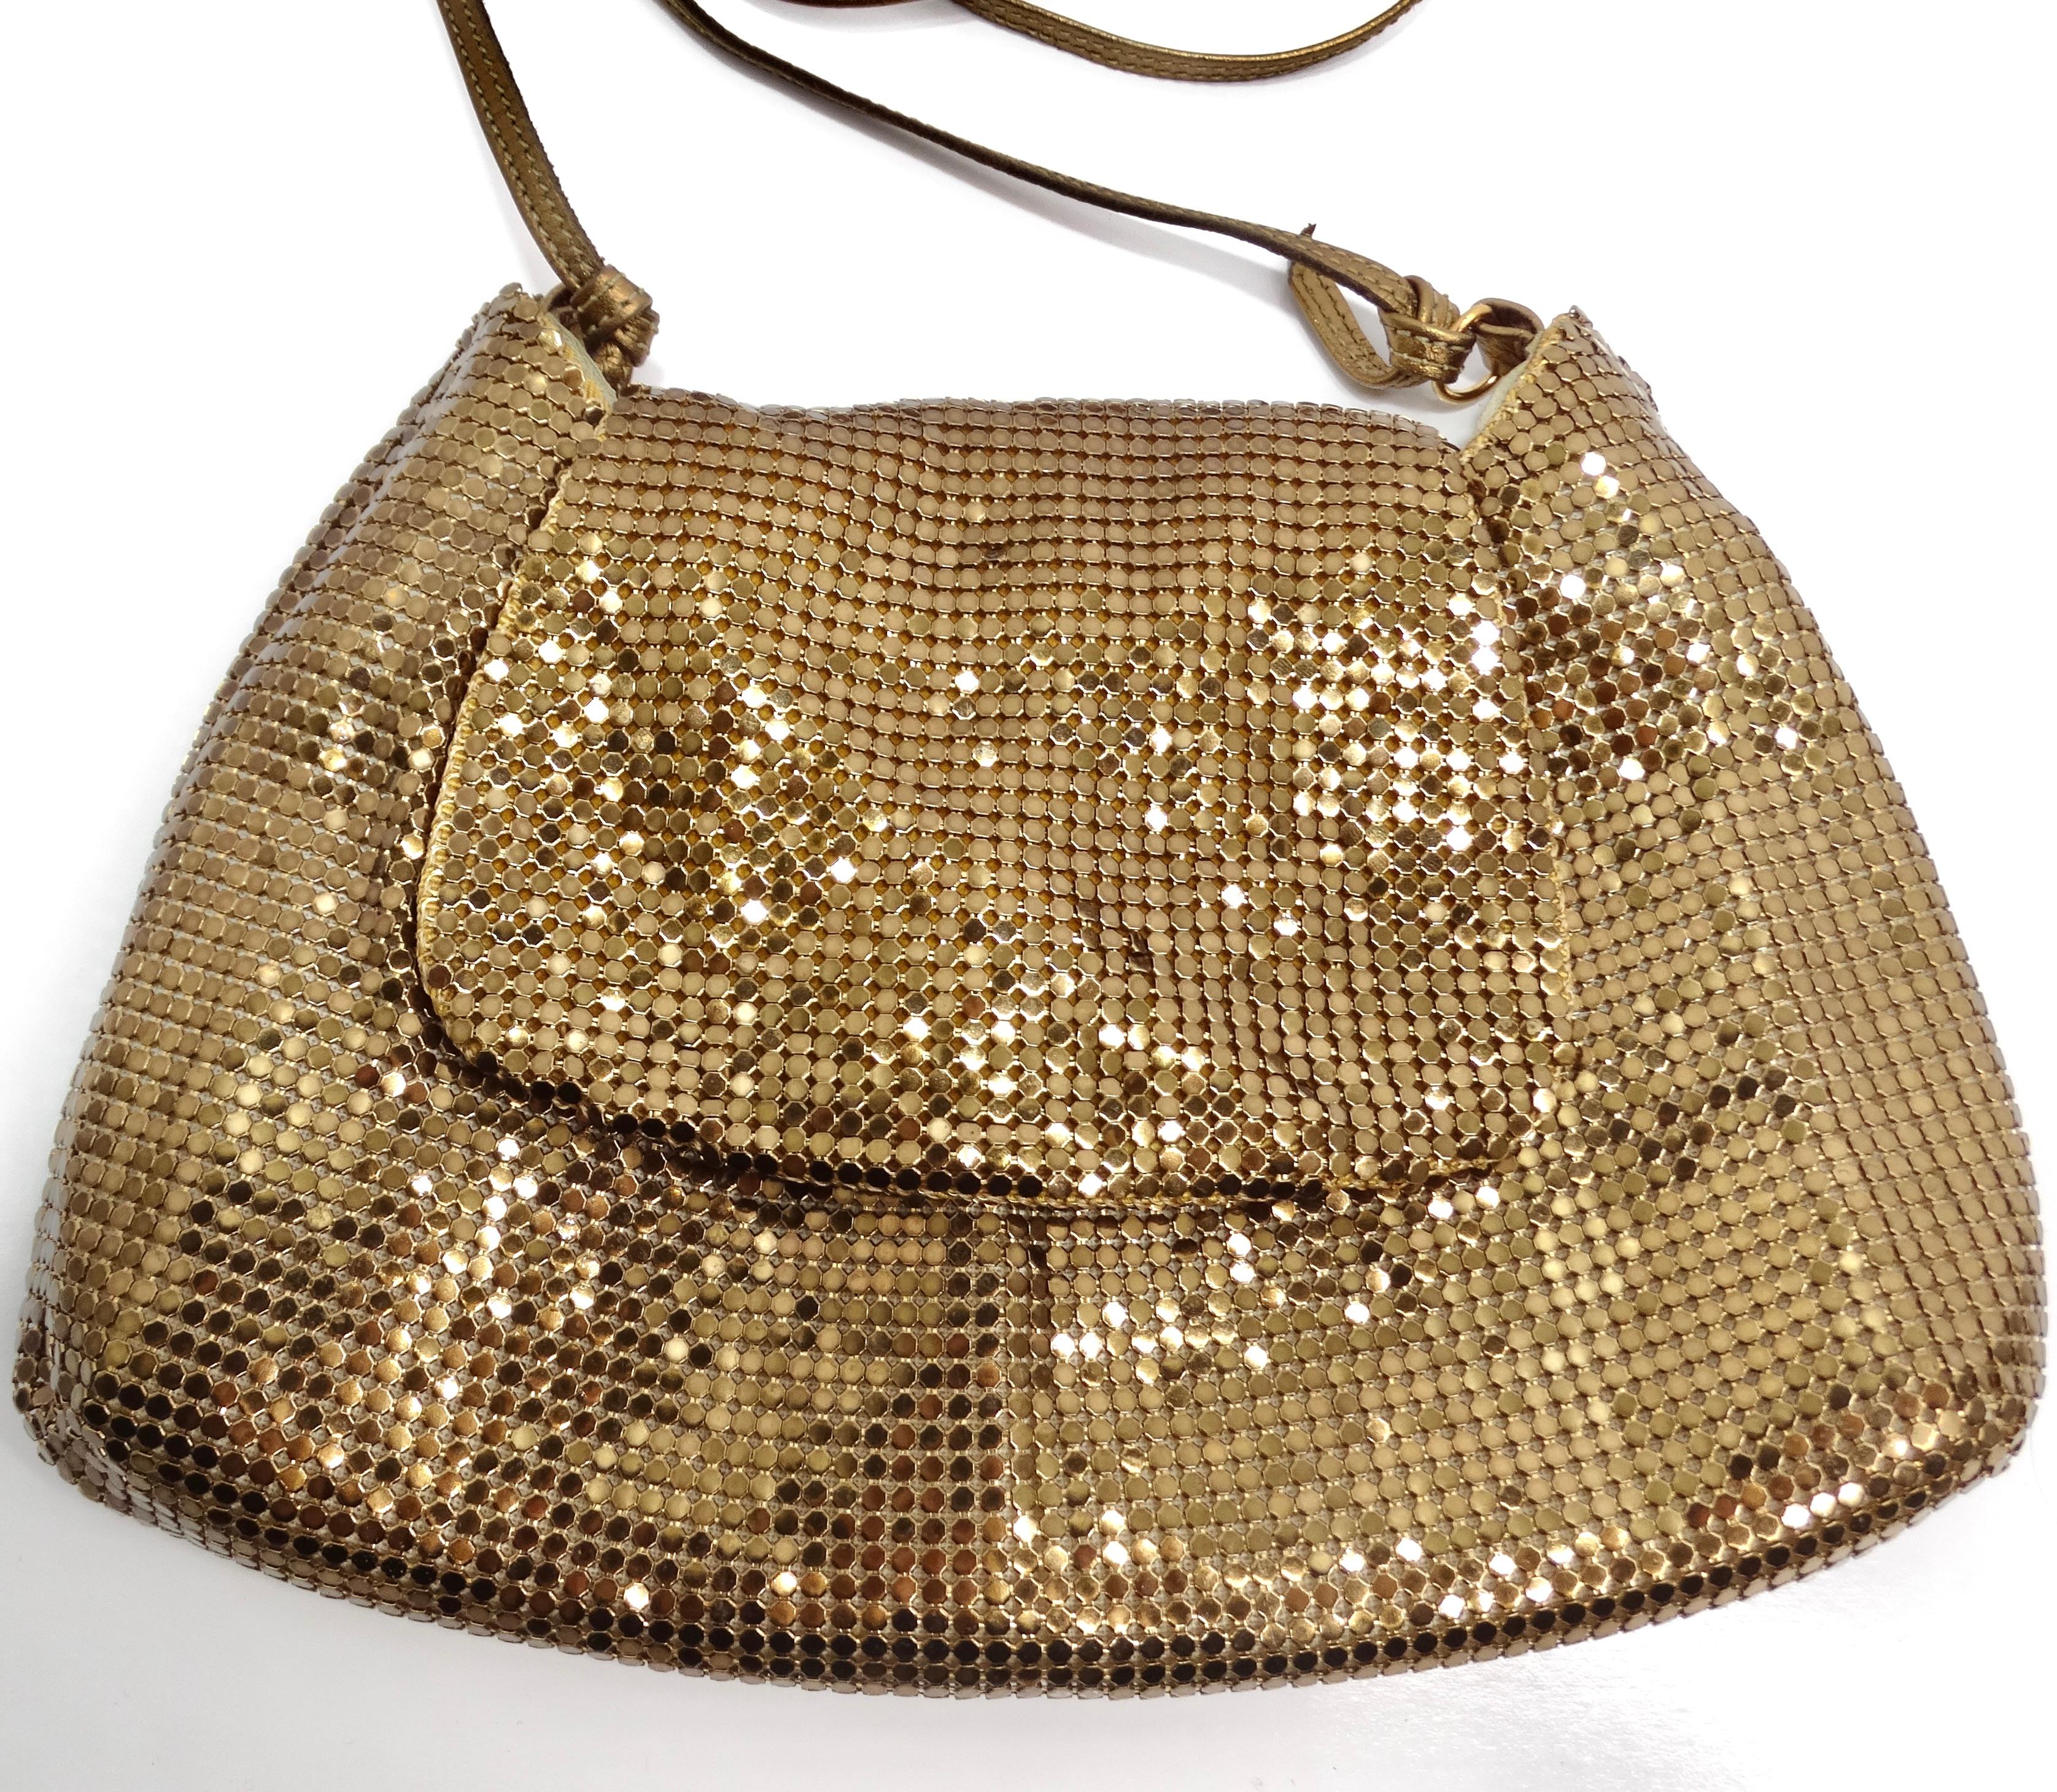 Rehaussez votre style avec le sac à bandoulière en chaîne de maille ton or de Whiting & Davis, un accessoire intemporel et glamour qui exsude un charme d'inspiration vintage. Fabriqué à partir d'une superbe cotte de mailles dorée, ce mini sac à